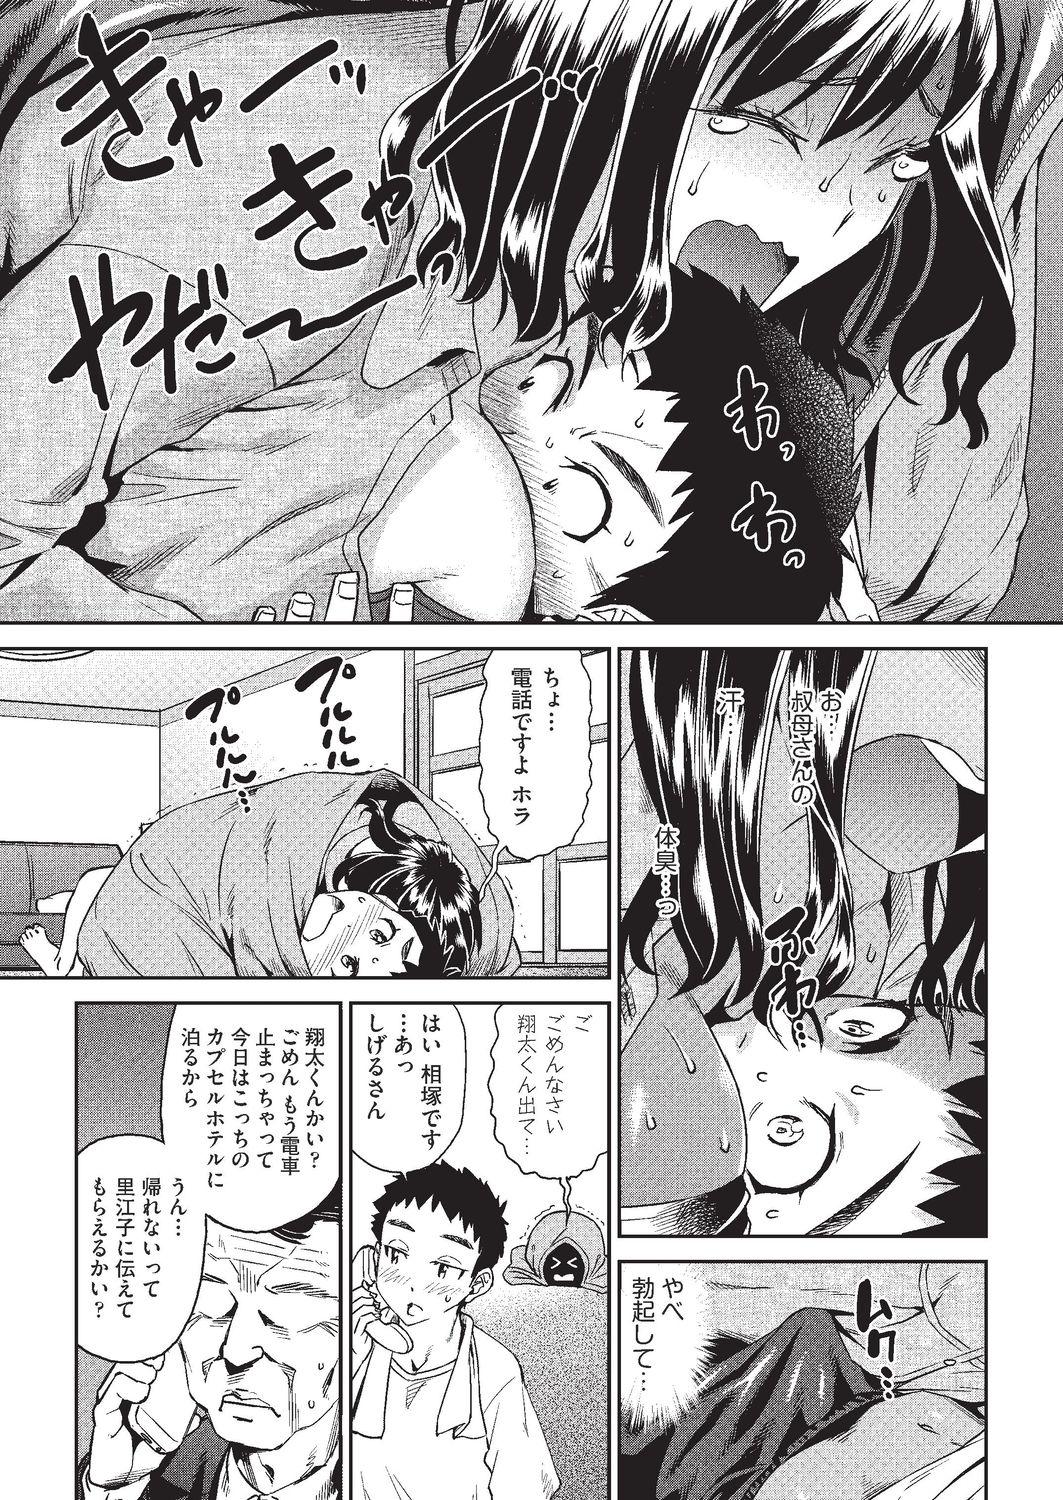 Shecock Arashi no Yoru ni Analplay - Page 5